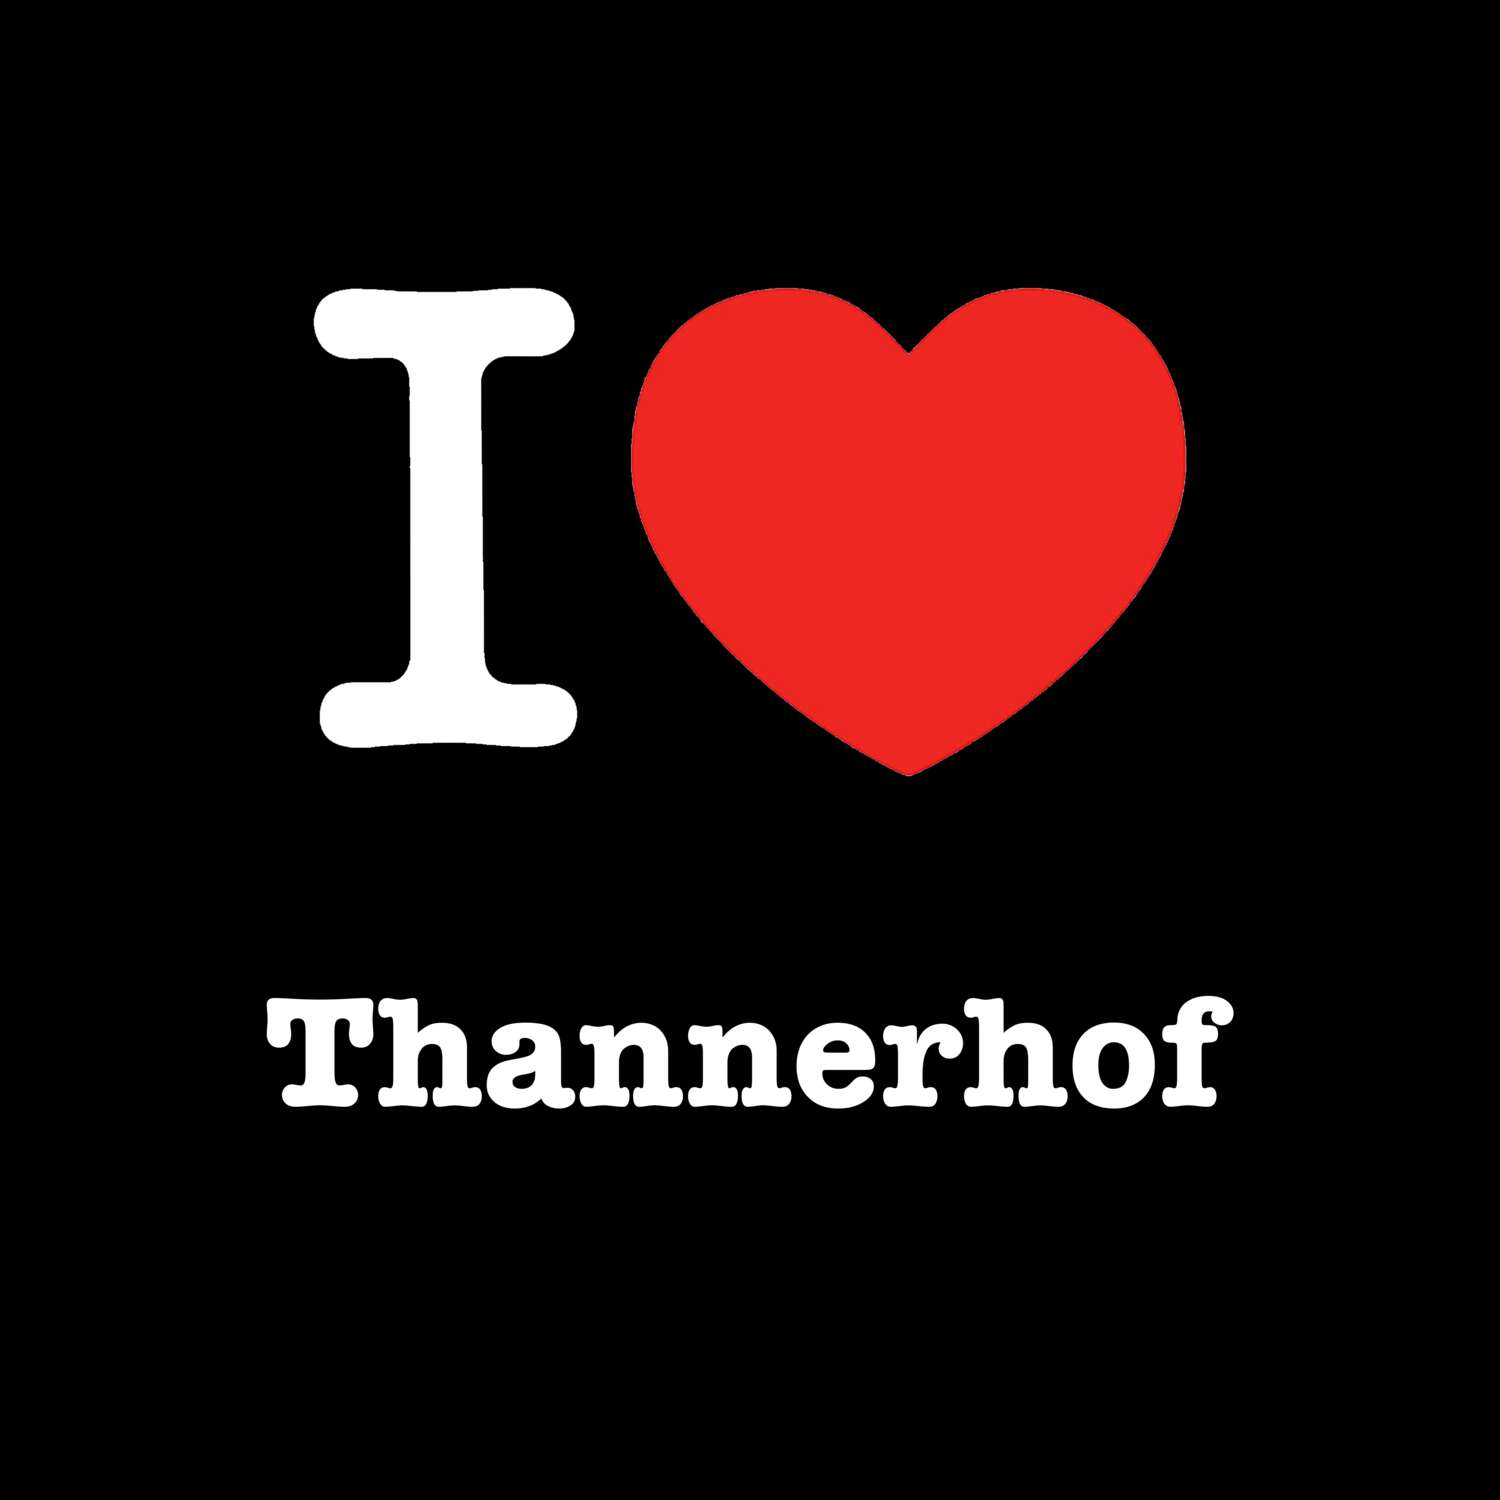 Thannerhof T-Shirt »I love«